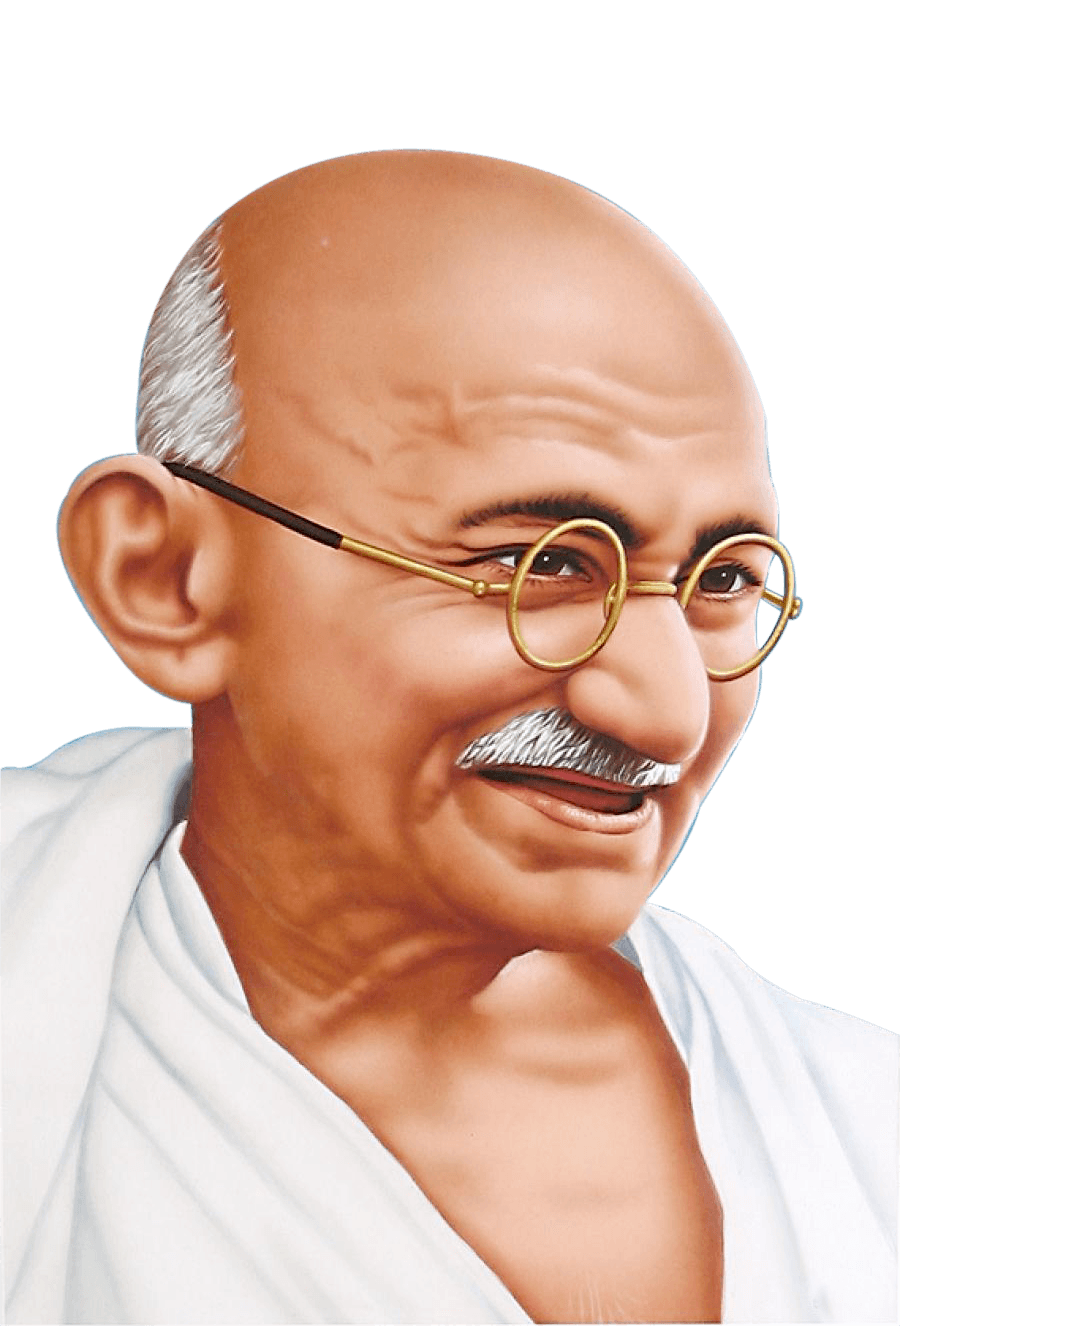 Mahatma Gandhi PNG image free download